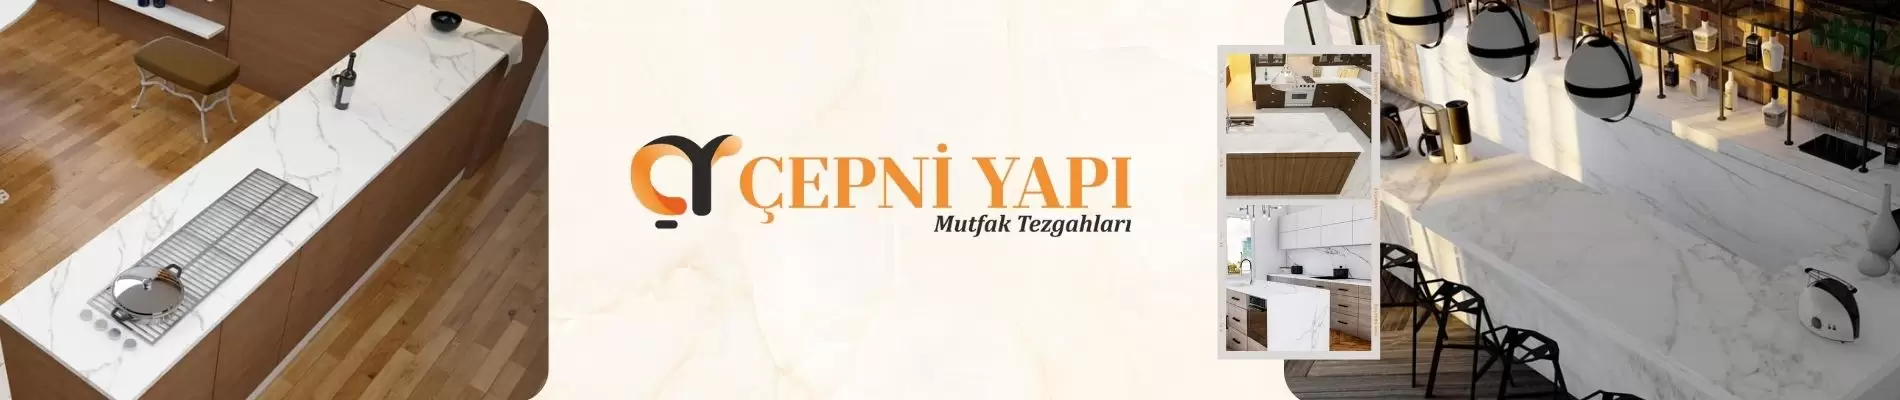 "ÇEPNİ YAPI® ile Kaliteli ve Garantili Mutfak Tezgahı İmalatının Sırları"